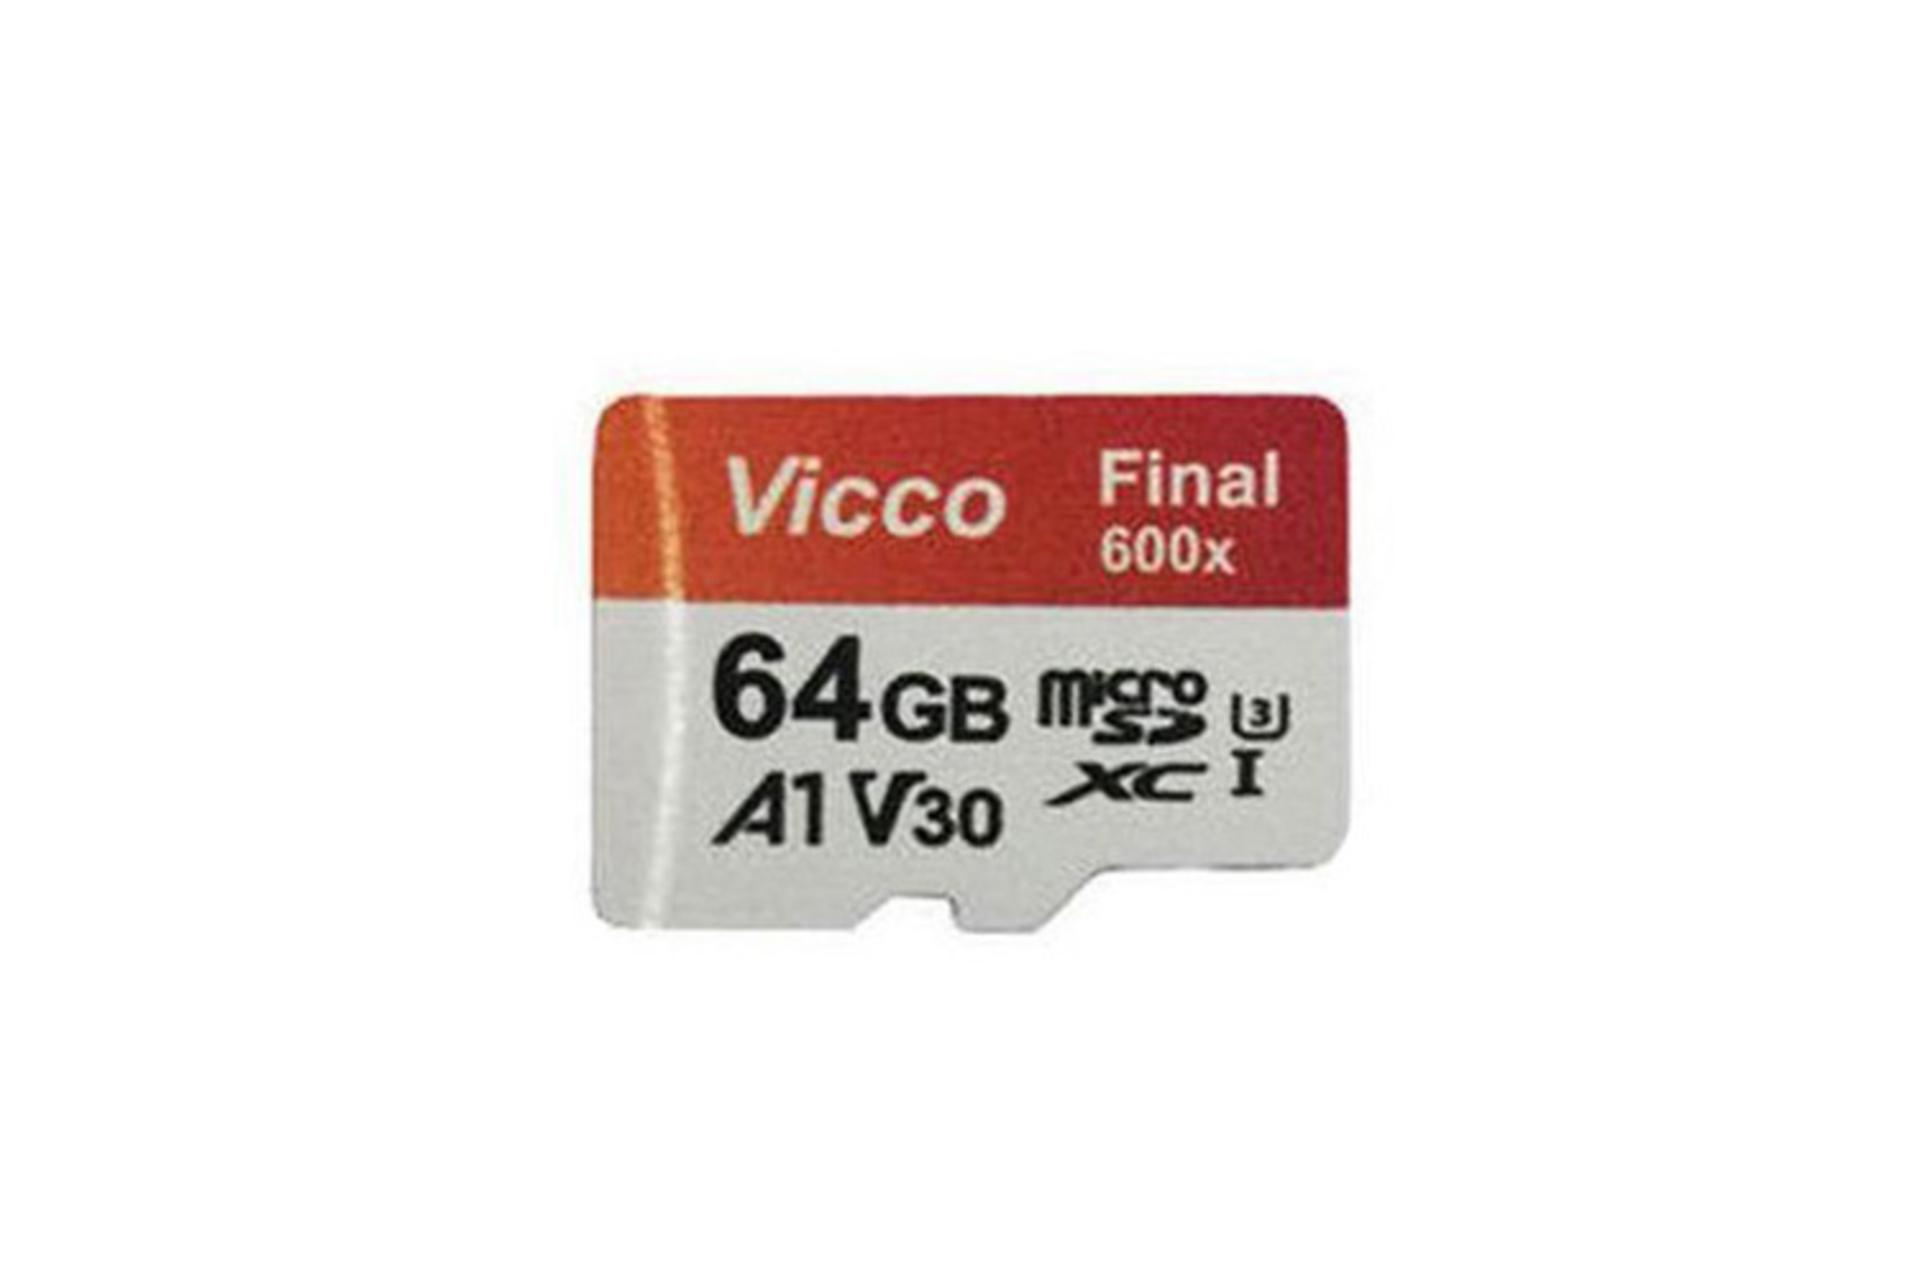 مرجع متخصصين ايران كارت حافظه ويكومن Viccoman Final 600X Plus MicroSDXC Class 10 UHS-I U3 64GB